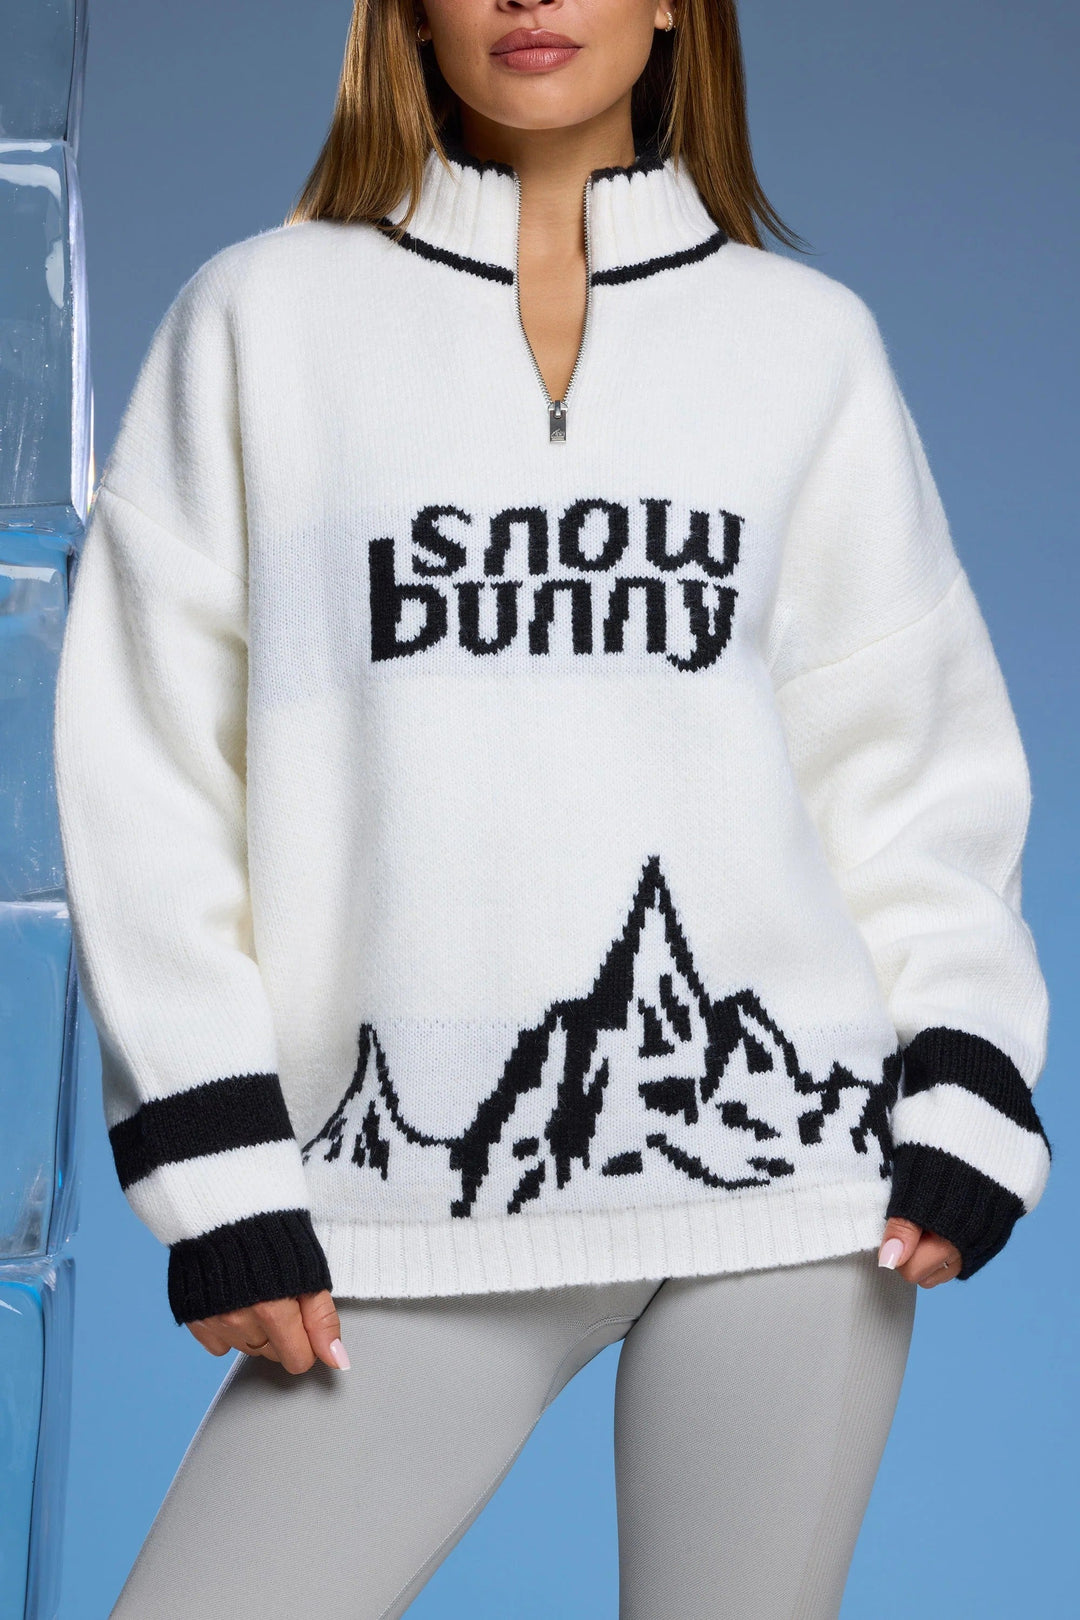 Sweter zapinany na zamek błyskawiczny w kształcie króliczka śnieżnego